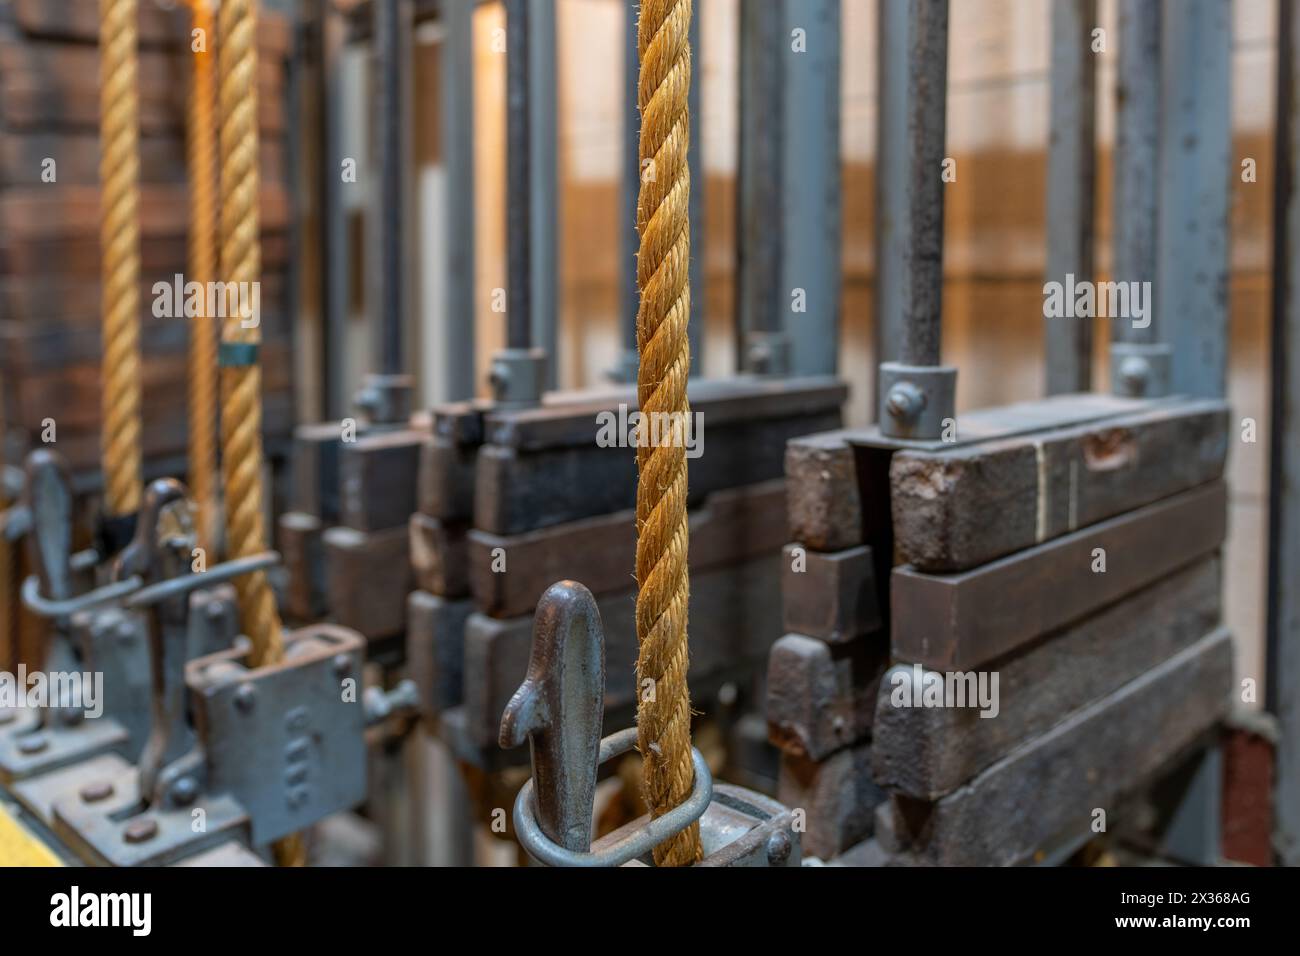 Älteres Theater-Rigging-System mit verdrehtem manila-Seil und Gewichten, die hinter der Bühne gefunden wurden. Stockfoto